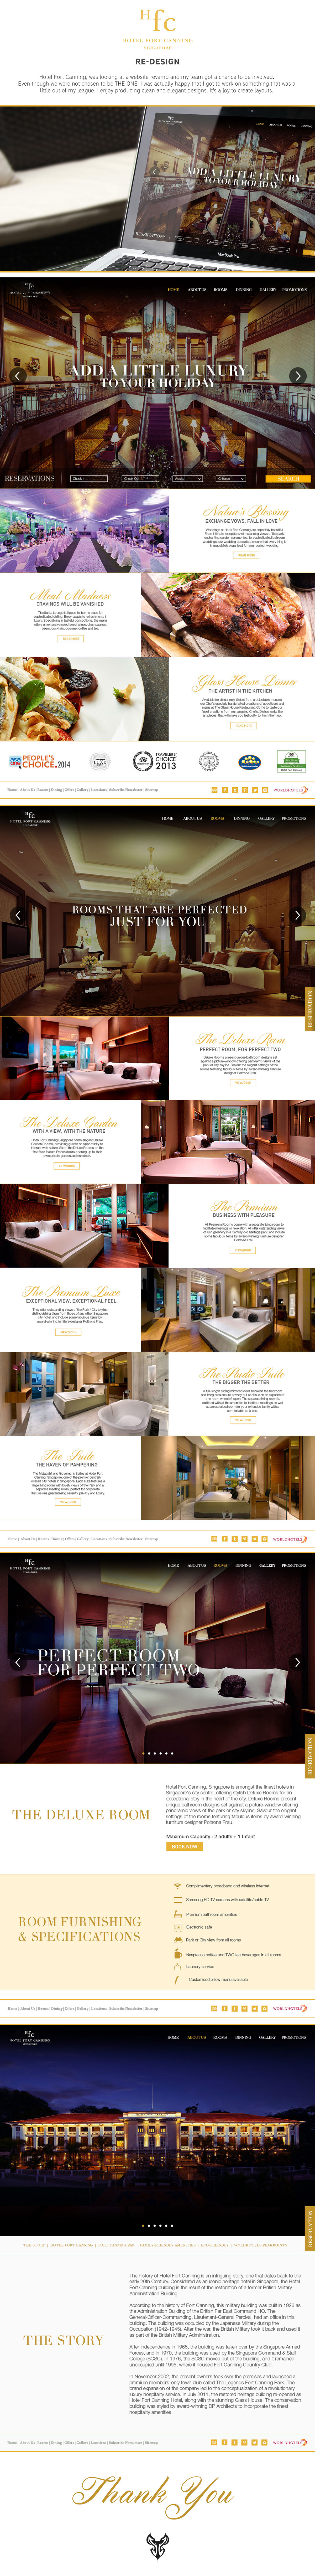 hotel Website Webdesign redesign elegant clean Atas ux UI